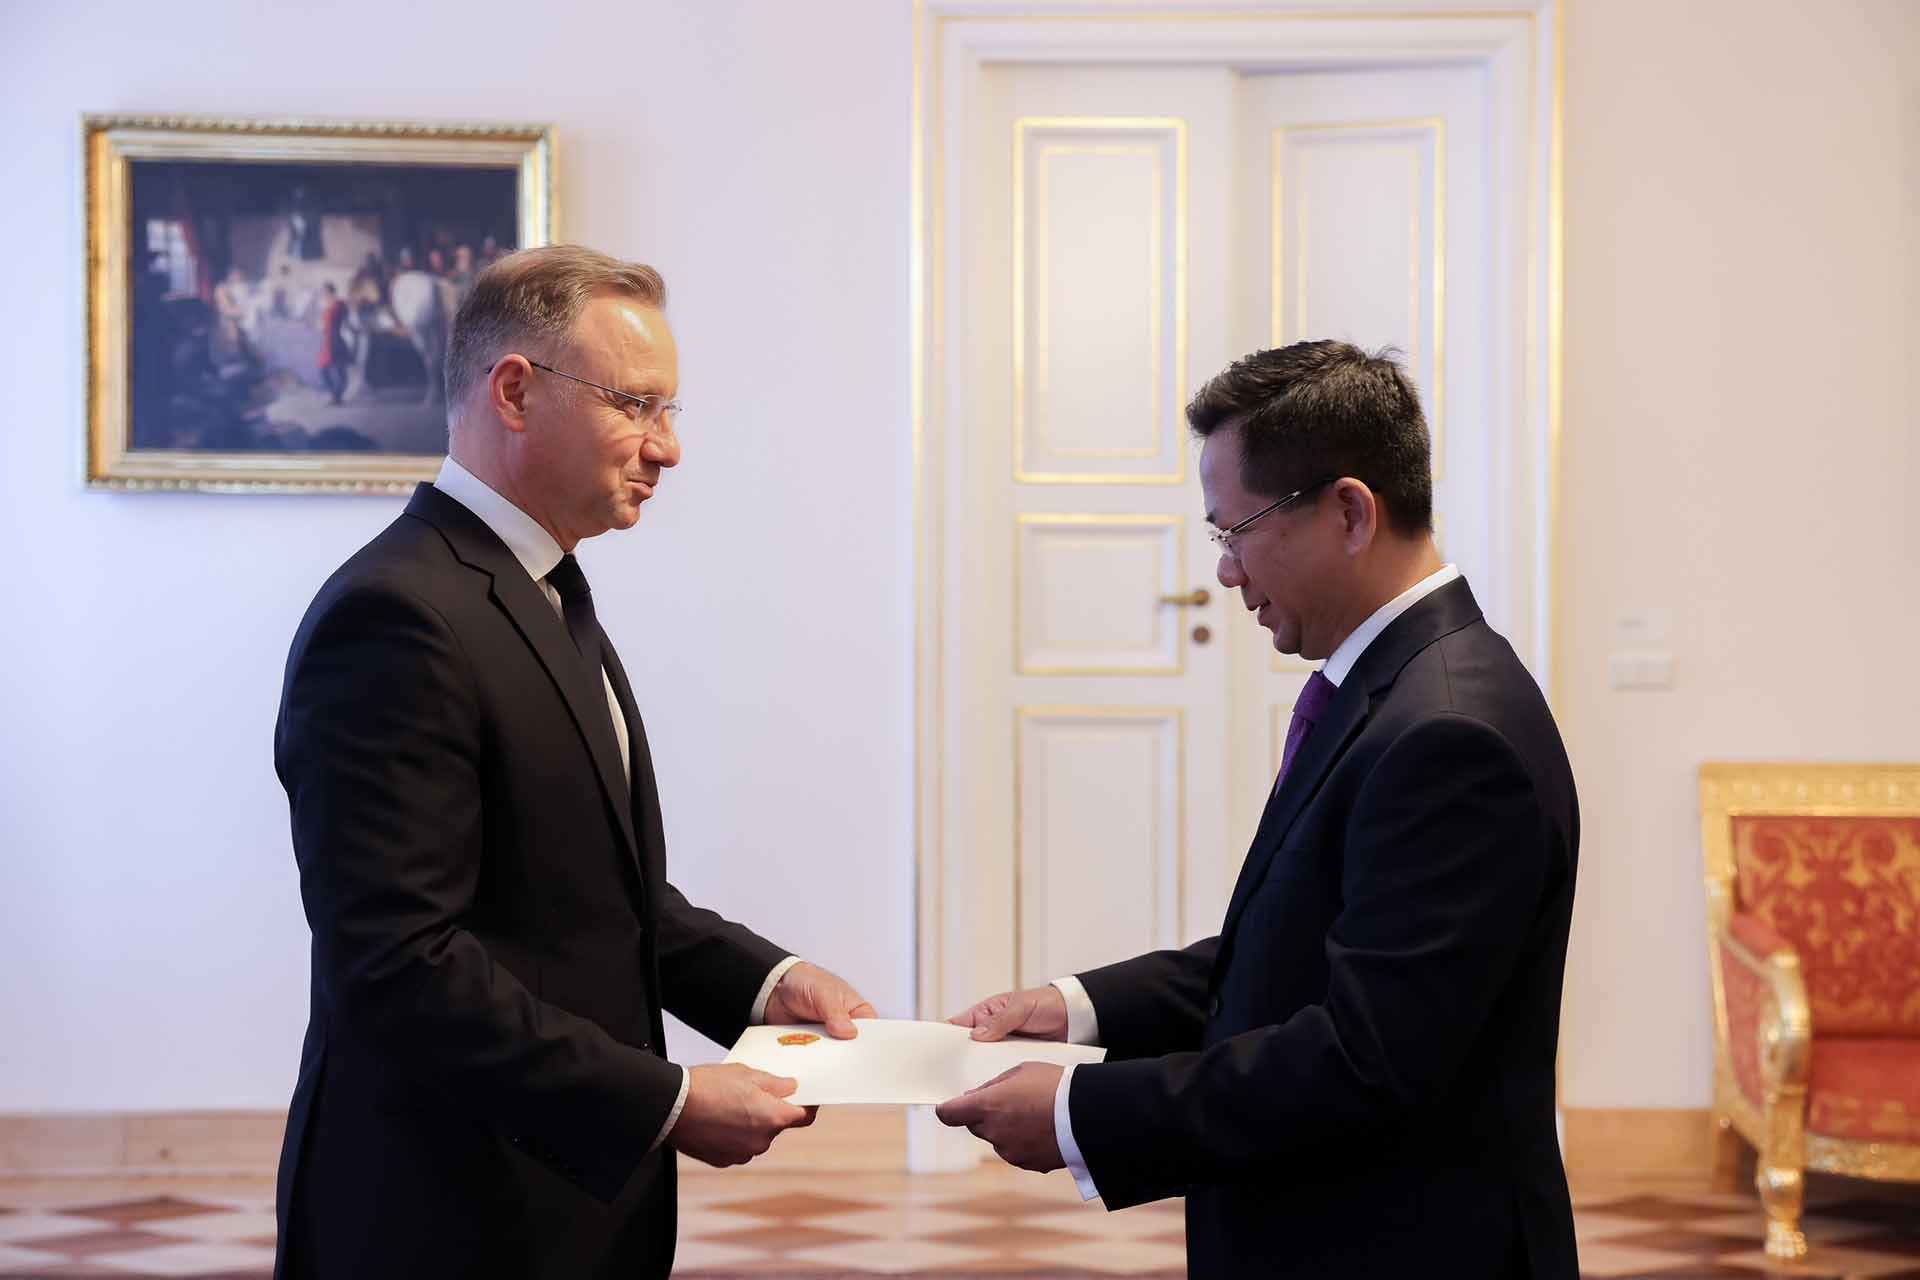 Đại sứ Hà Hoàng Hải trình Thư ủy nhiệm lên Tổng thống Ba Lan Andrzej Duda